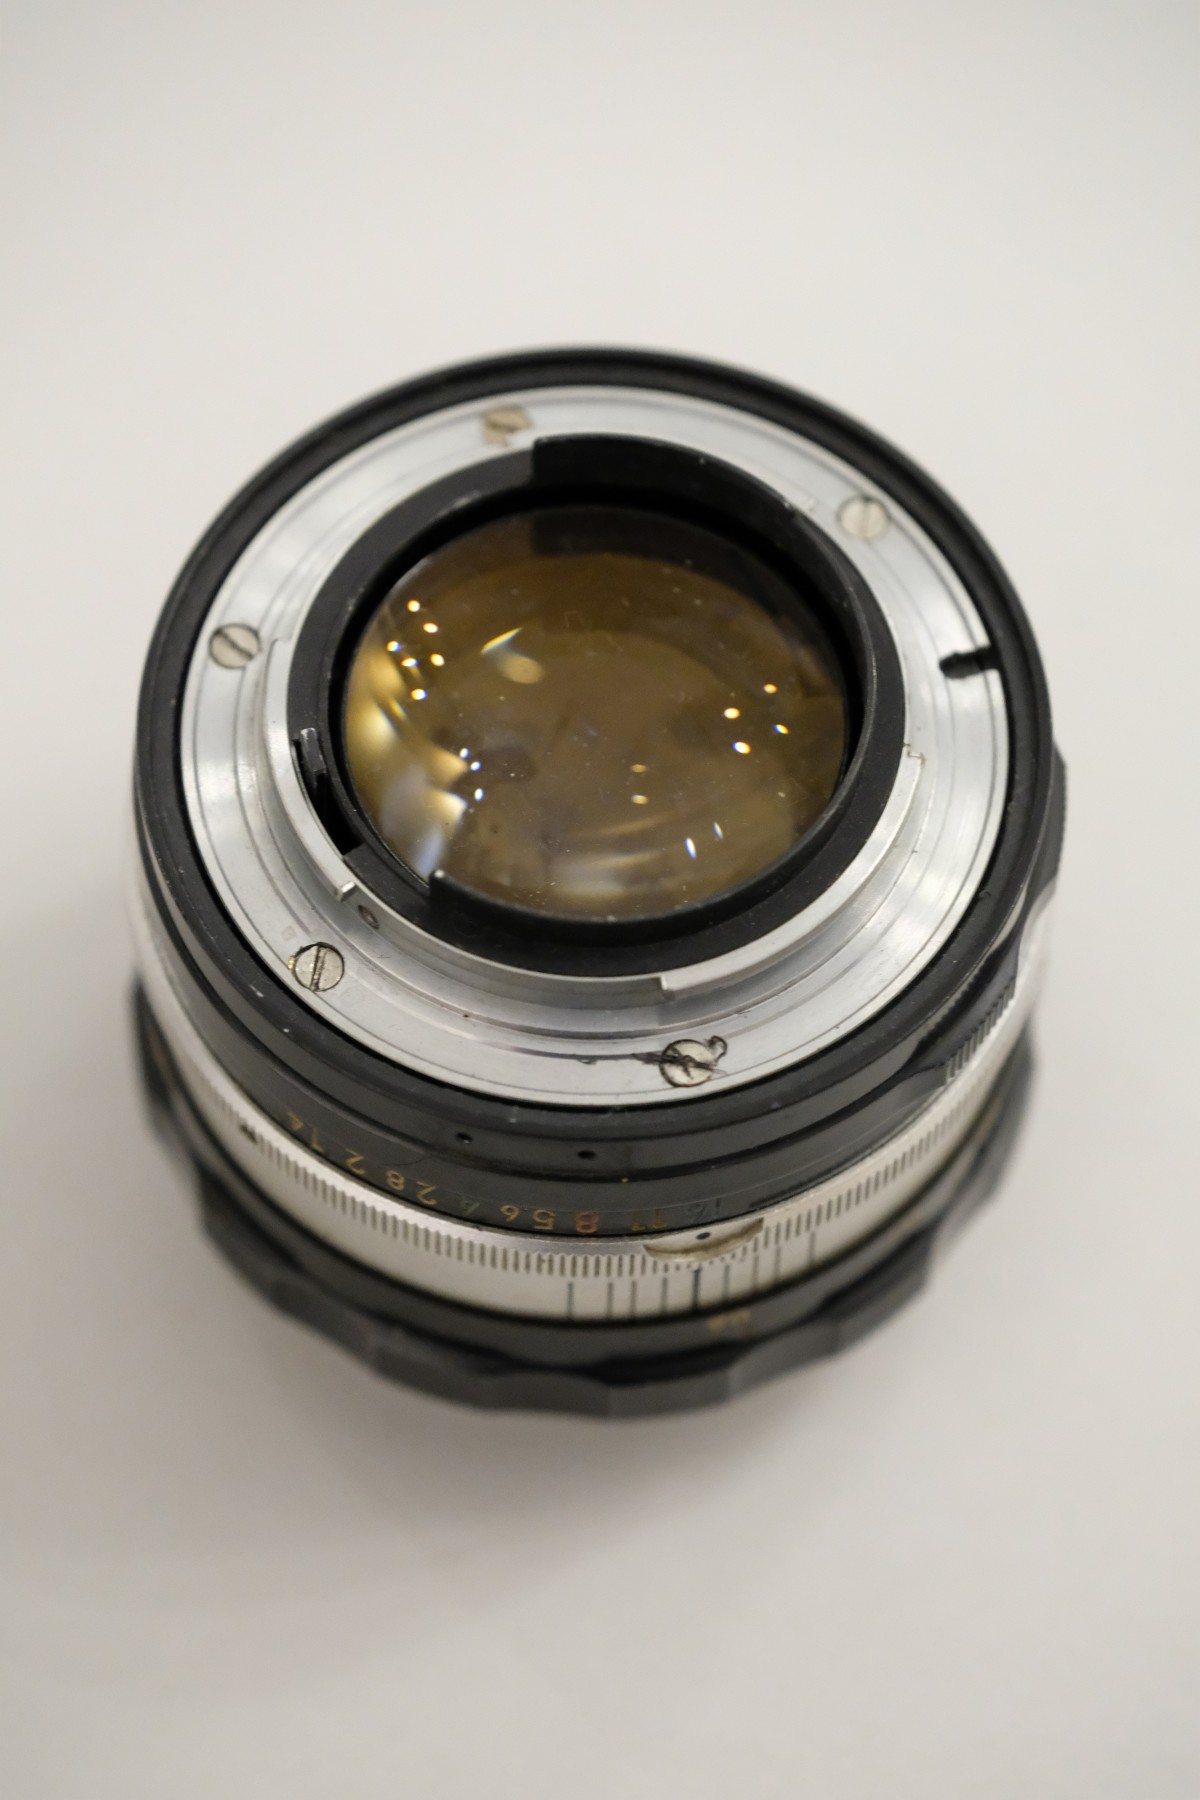 Nikon Nikkor-s Auto 50mm f1.4 Non-AI - 單眼相機